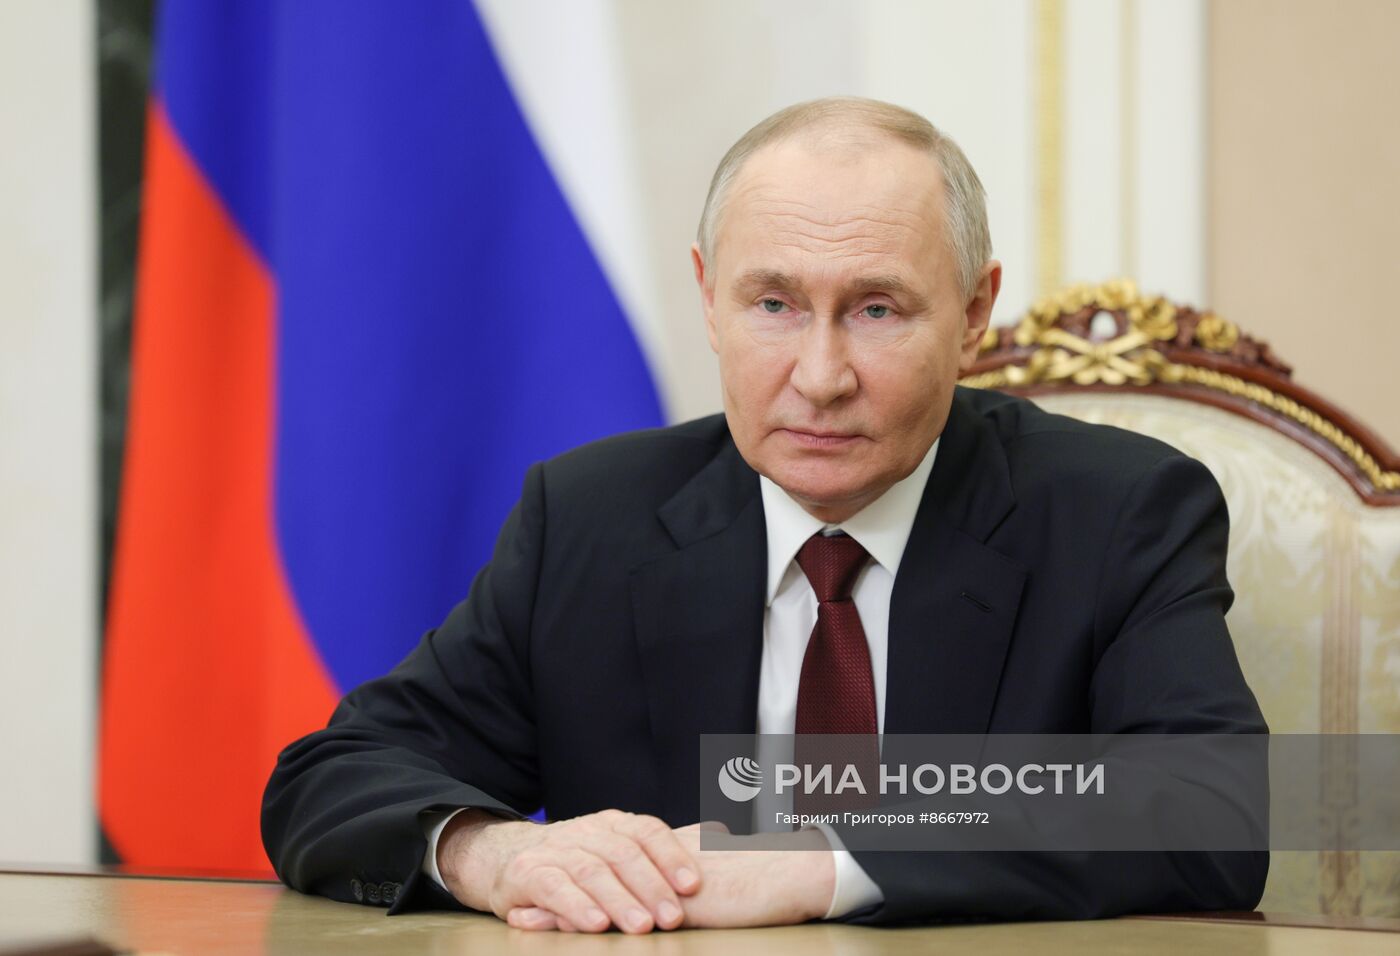 Видеообращение президента Владимира Путина к участникам 12-й международной встречи высоких представителей, курирующих вопросы безопасности